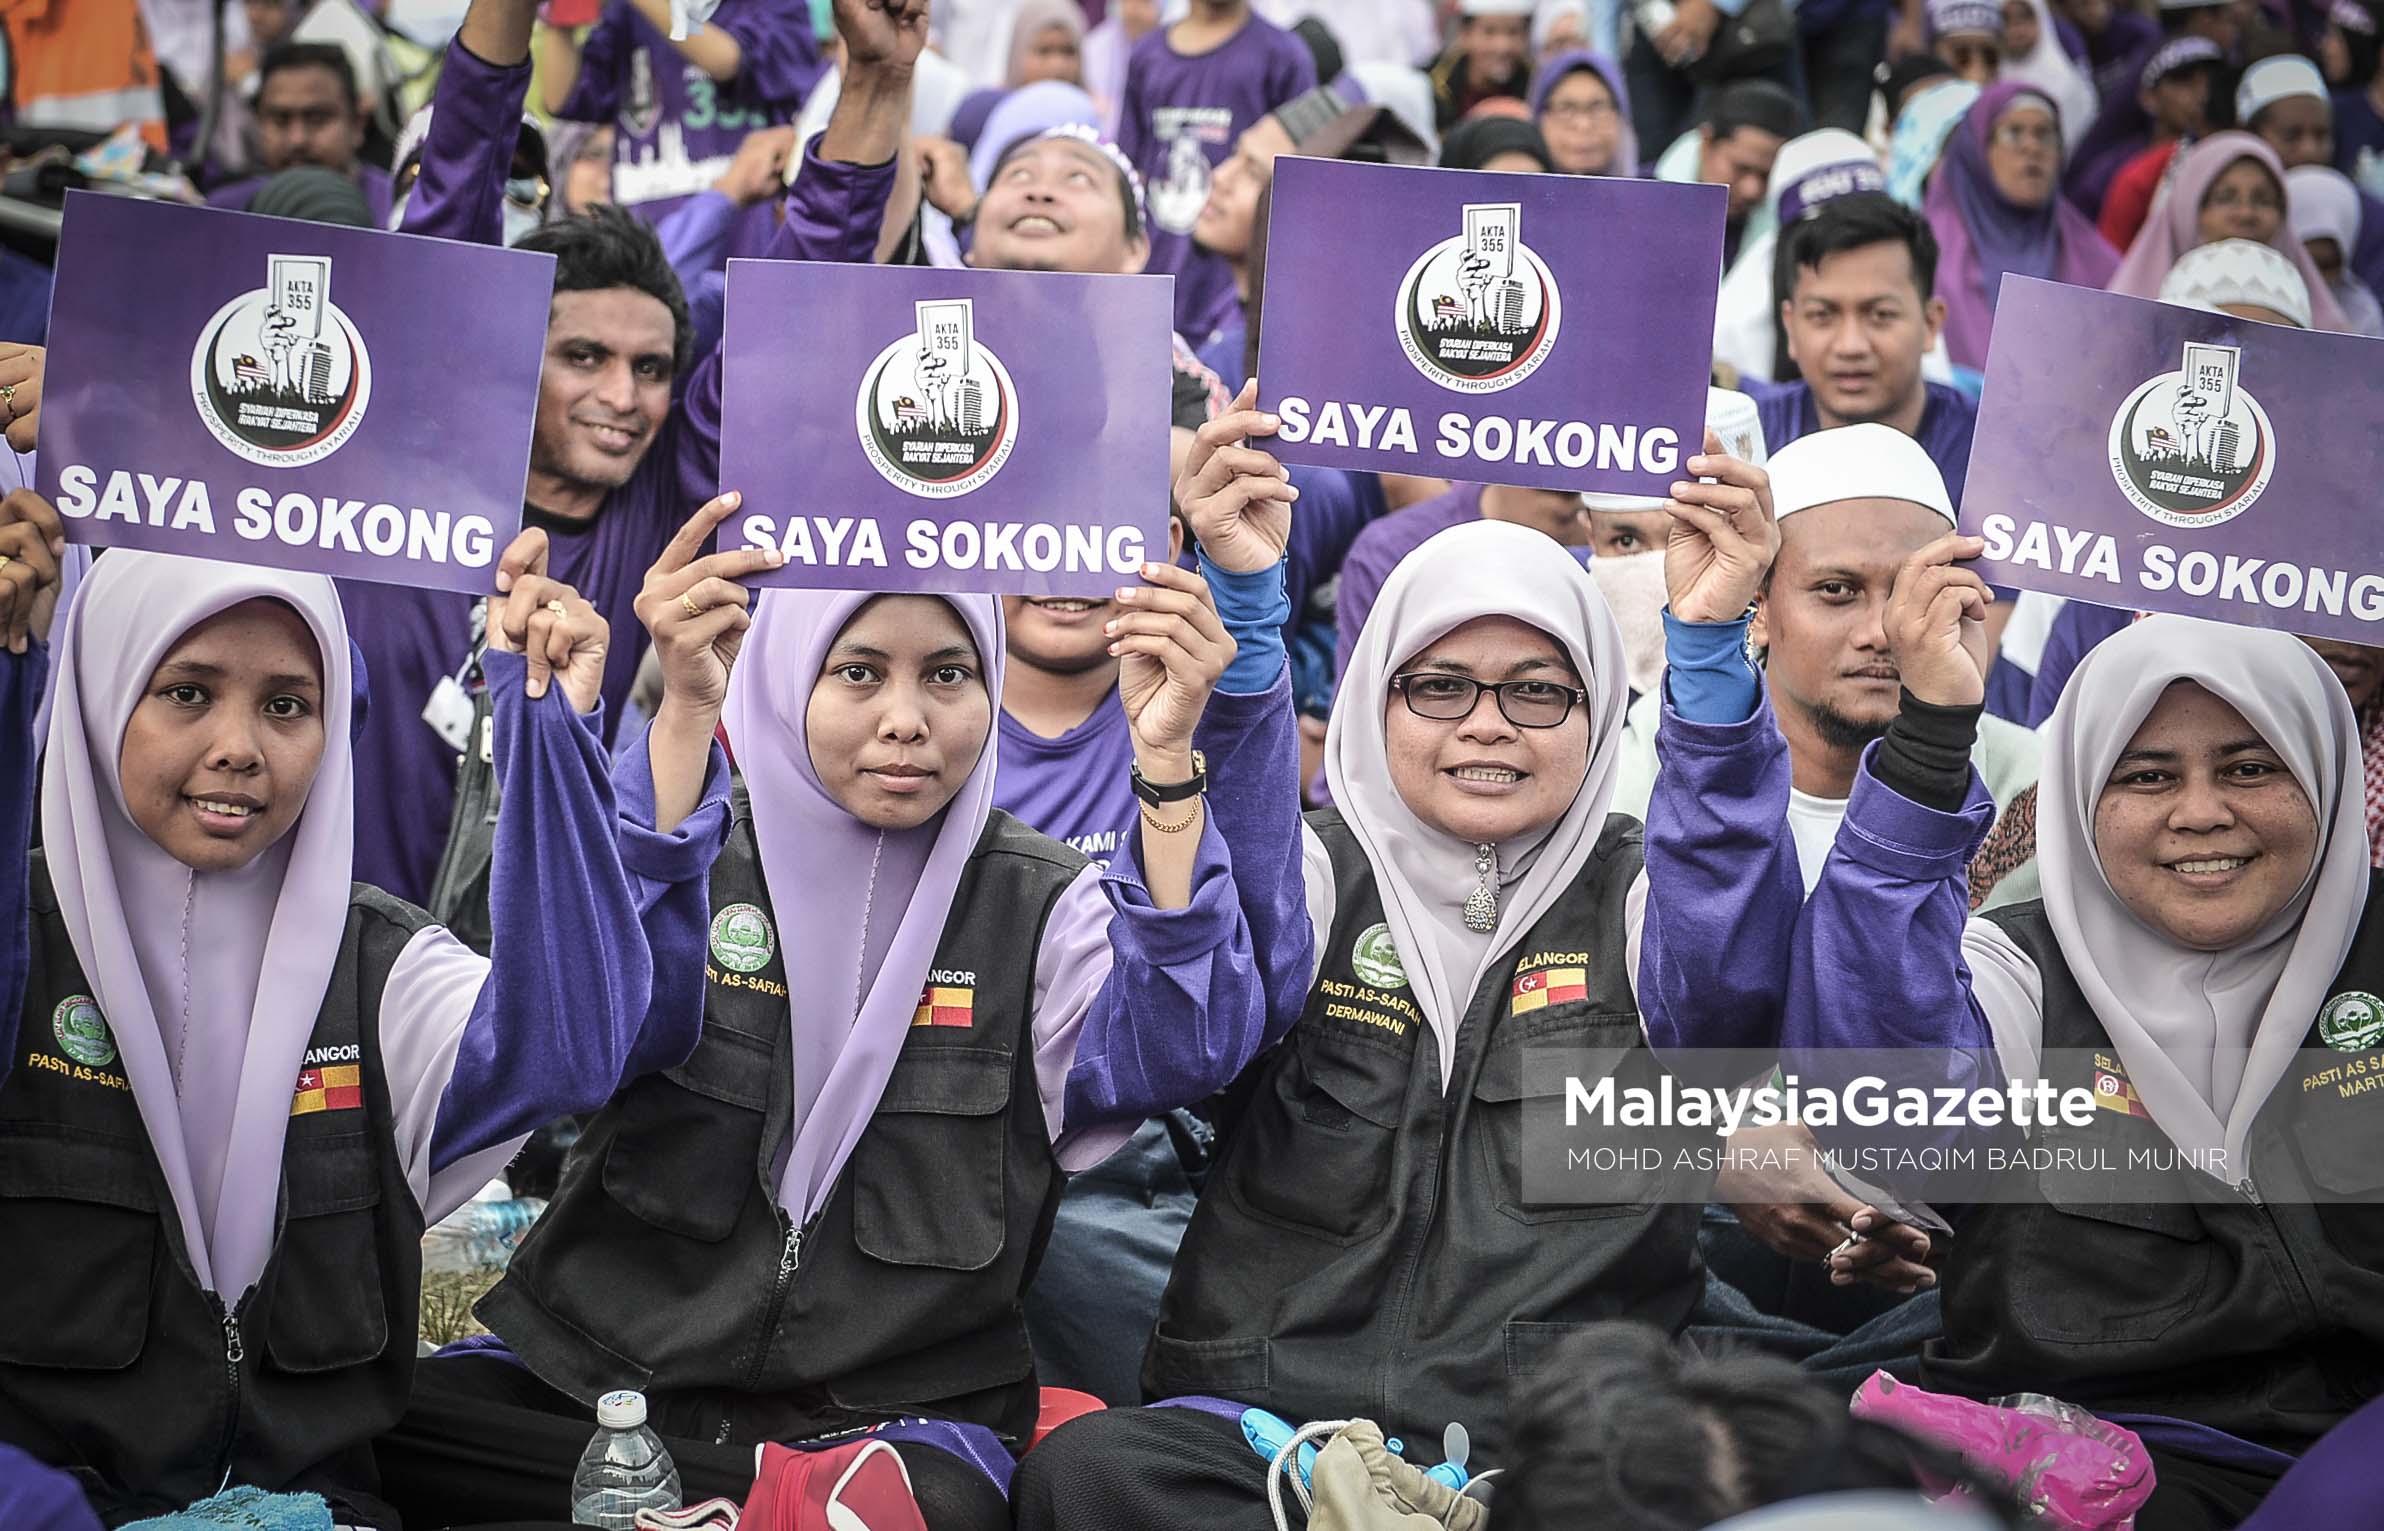 Sebahagian reaksi penyokong wanita yang hadir pada Himpunan RUU 355 di Padang Merbok, Kuala Lumpur. foto ASHRAF MUSTAQIM BADRUL MUNIR, 18 FEBRUARI 2017.